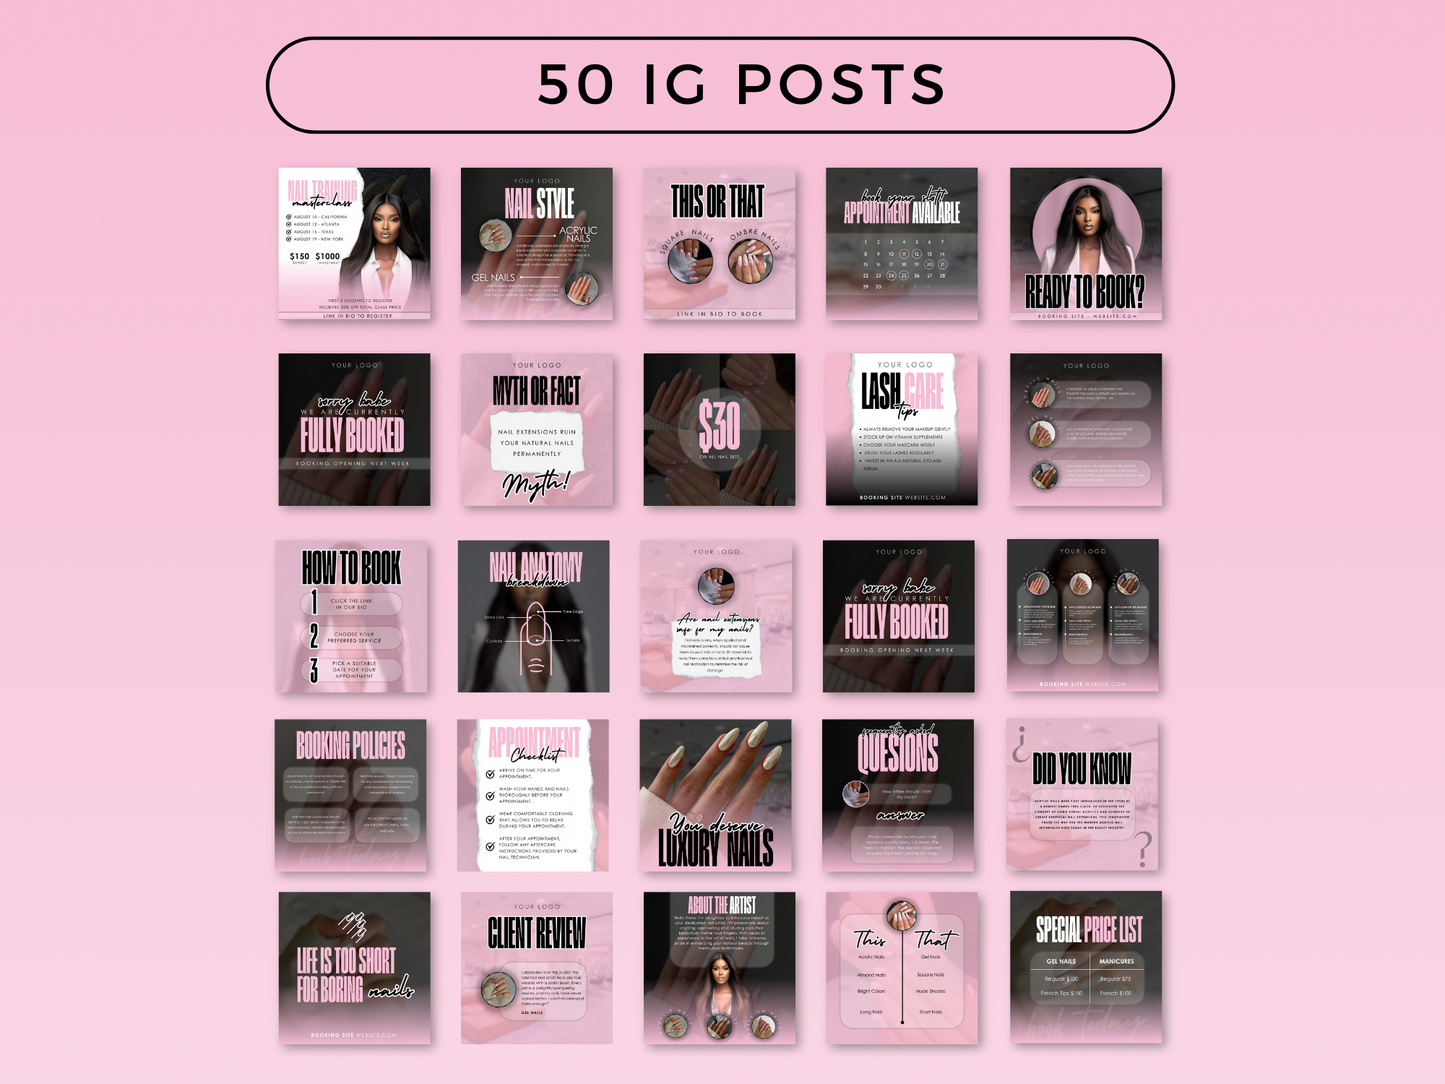 Pink & Black Nail Tech Instagram Kit